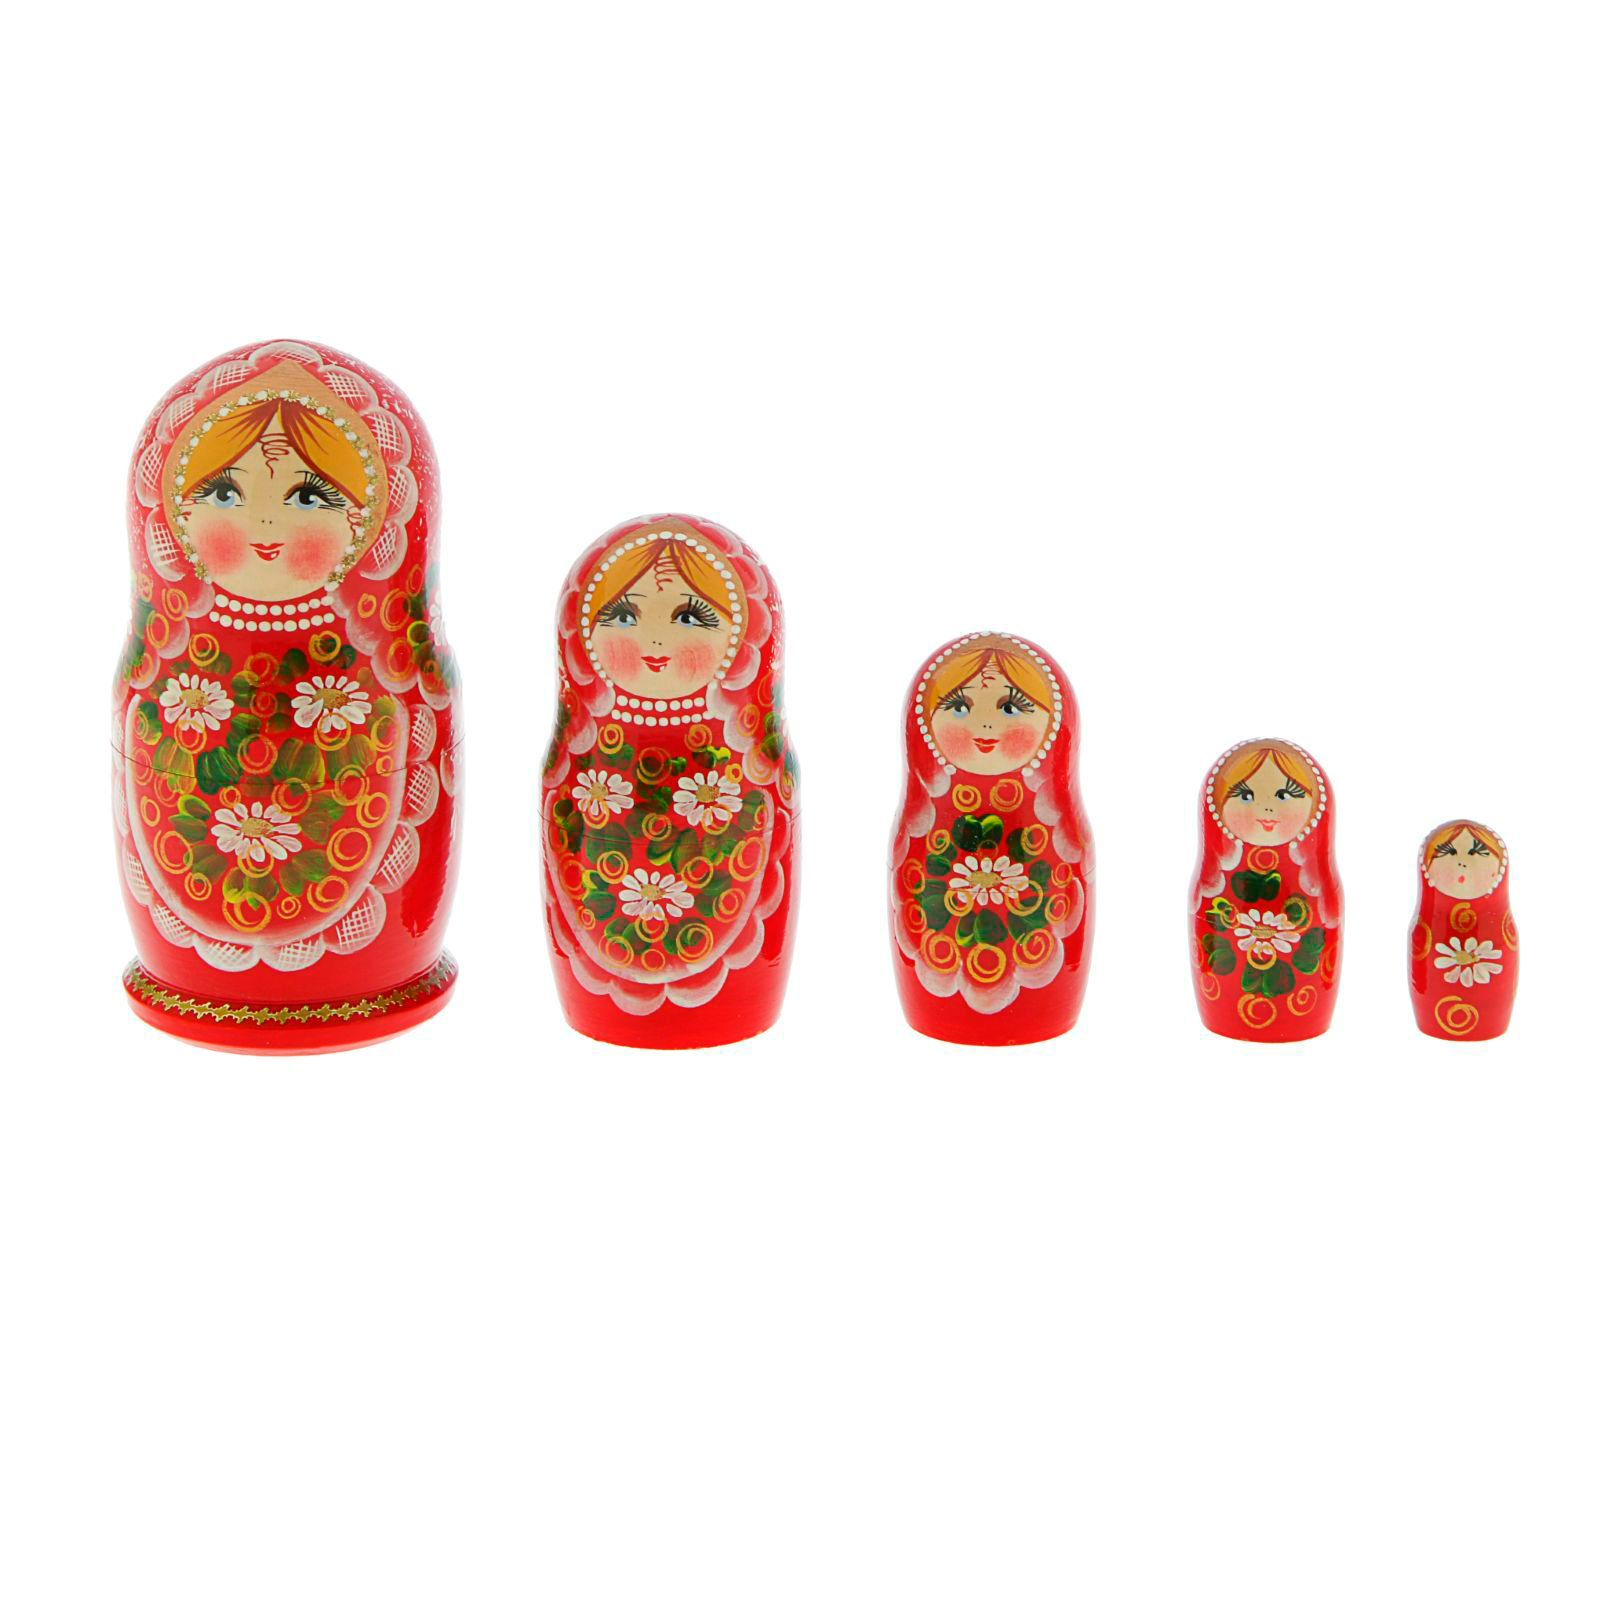 Какая русская игрушка олицетворяет крепкую семью. Матрешка "5 м малек поднос". Русские игрушки. Русские игрушки для детей.